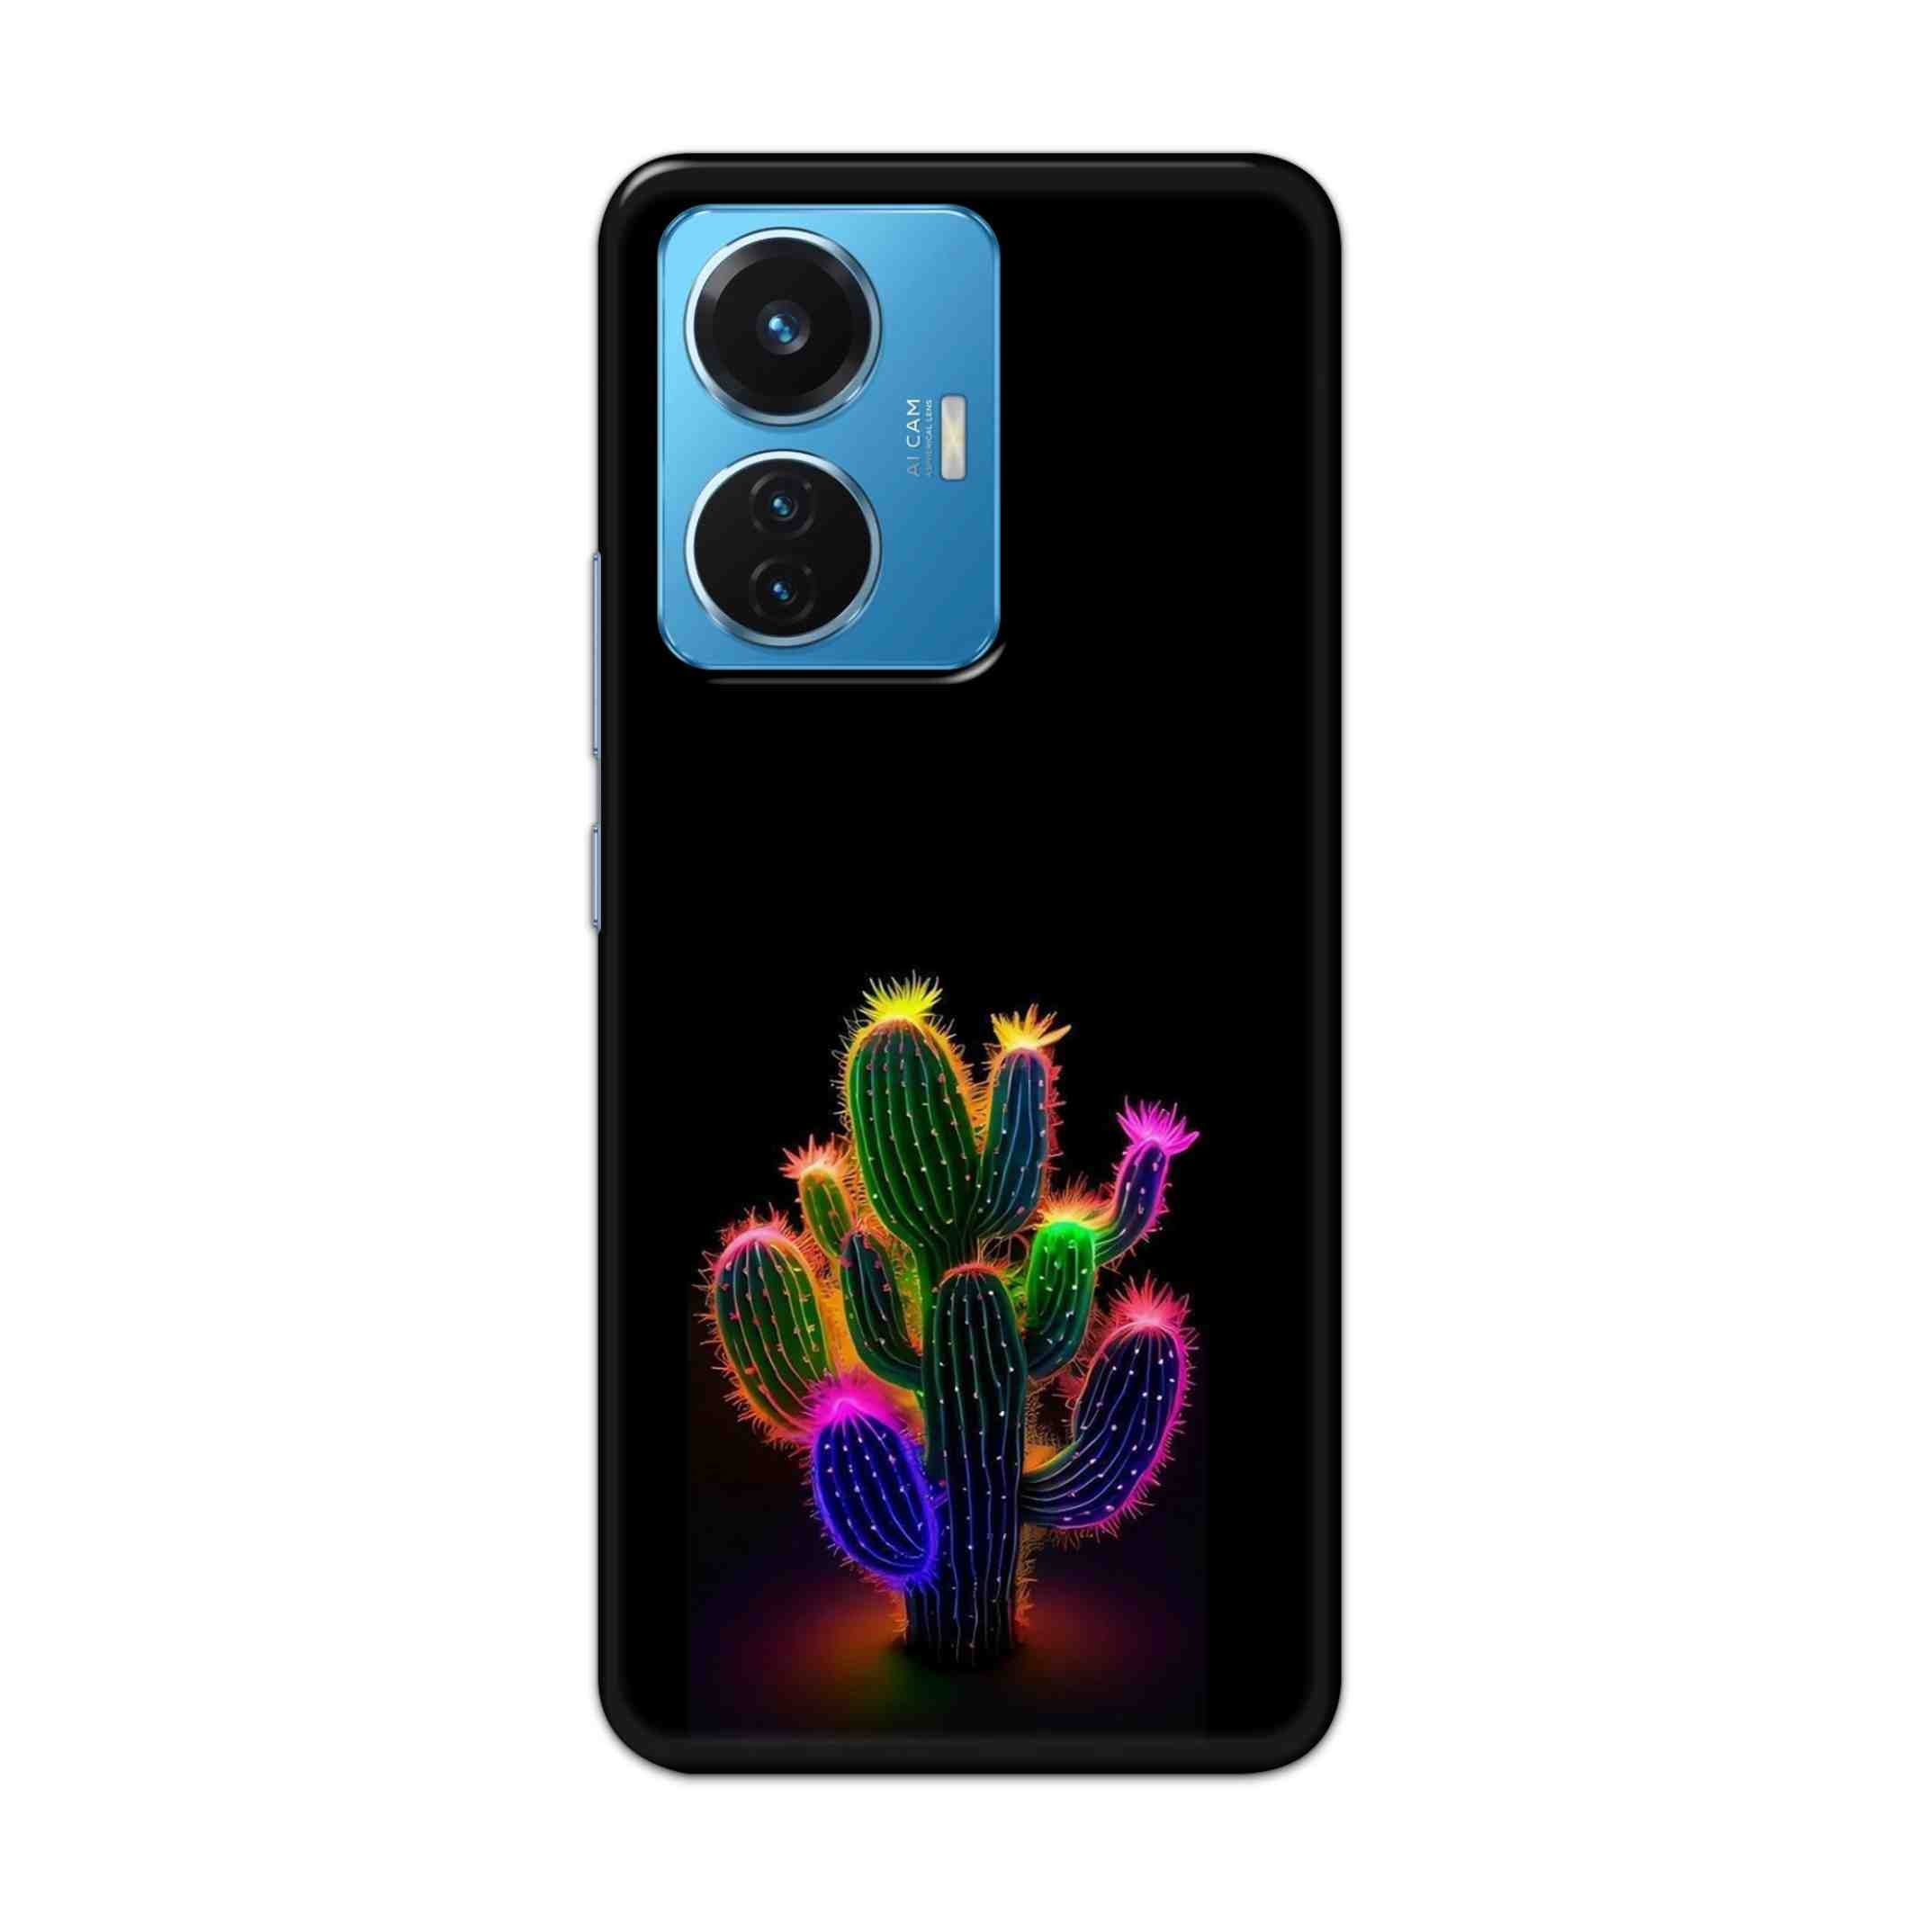 Buy Neon Flower Hard Back Mobile Phone Case Cover For Vivo T1 44W Online